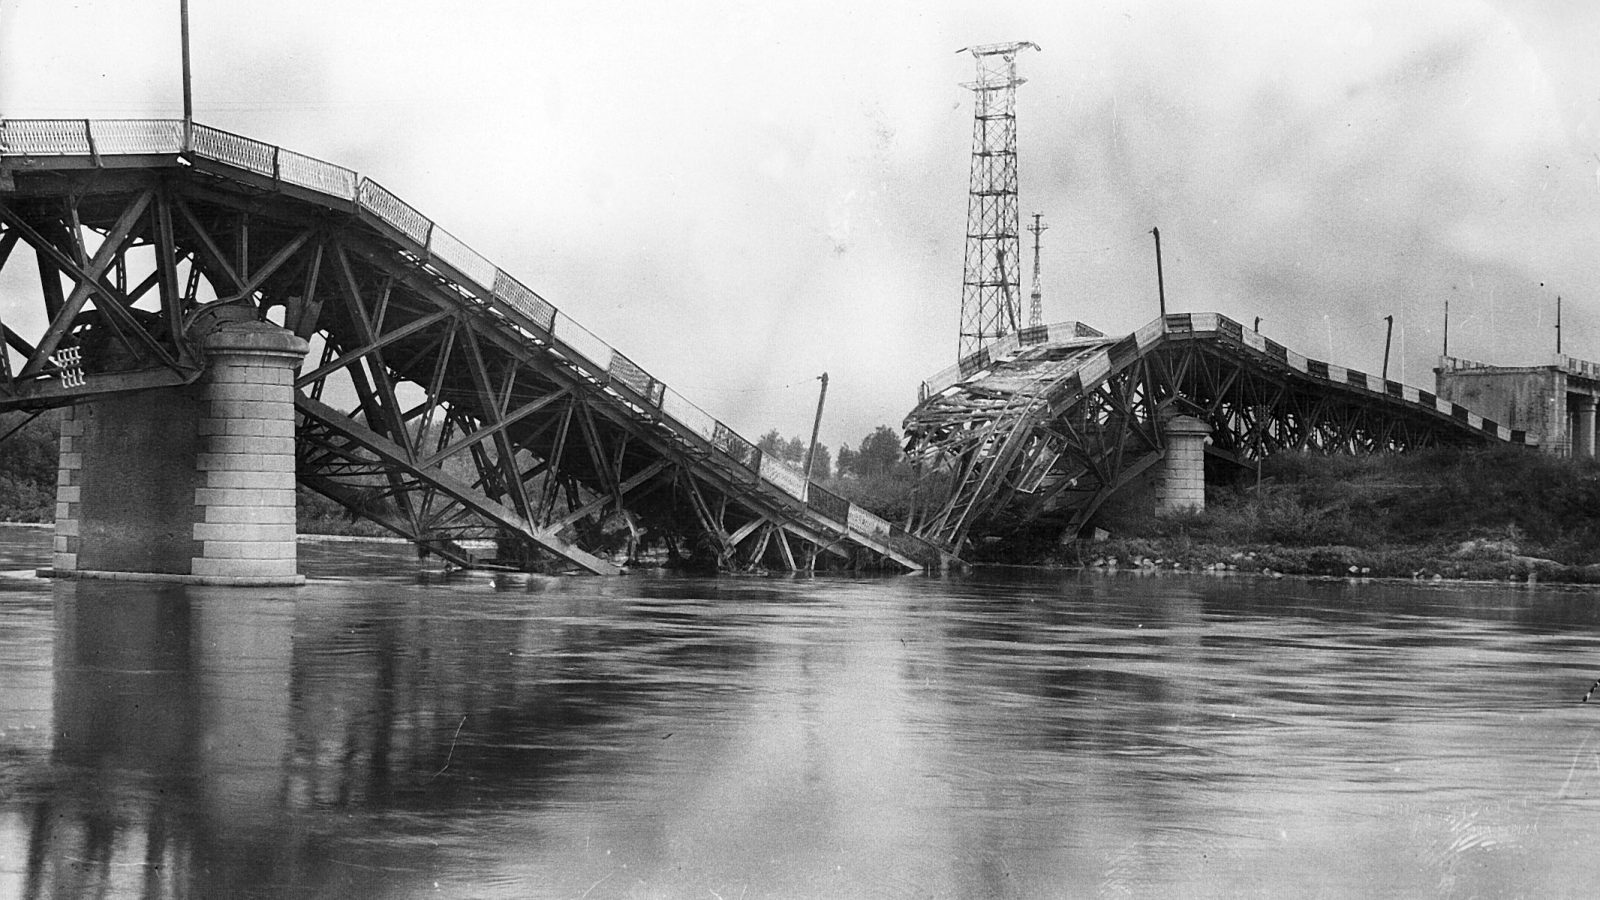  Strada statale 9 “Via Emilia”, il ponte sul Po distrutto durante la seconda guerra mondiale (Archivio storico Anas)